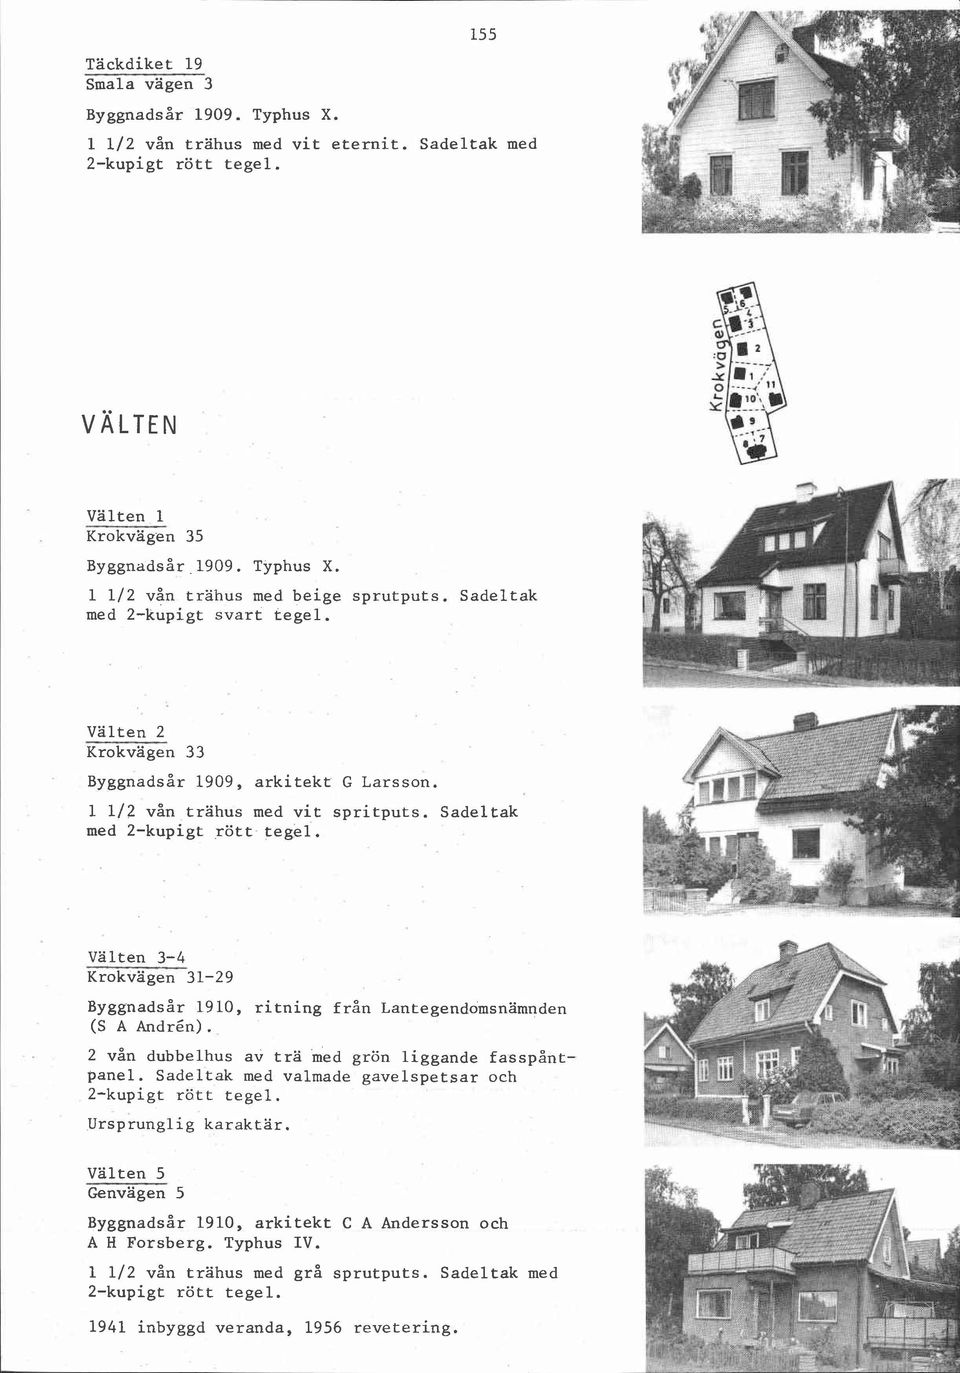 Sadeltak med Välten 3-4 Krokvägen 31-29 Byggnadsår 1910, ritning från Lantegendomsnämnden (S A Andrén). 2 vån dubbelhus av trä med grön liggande fasspåntpanel.